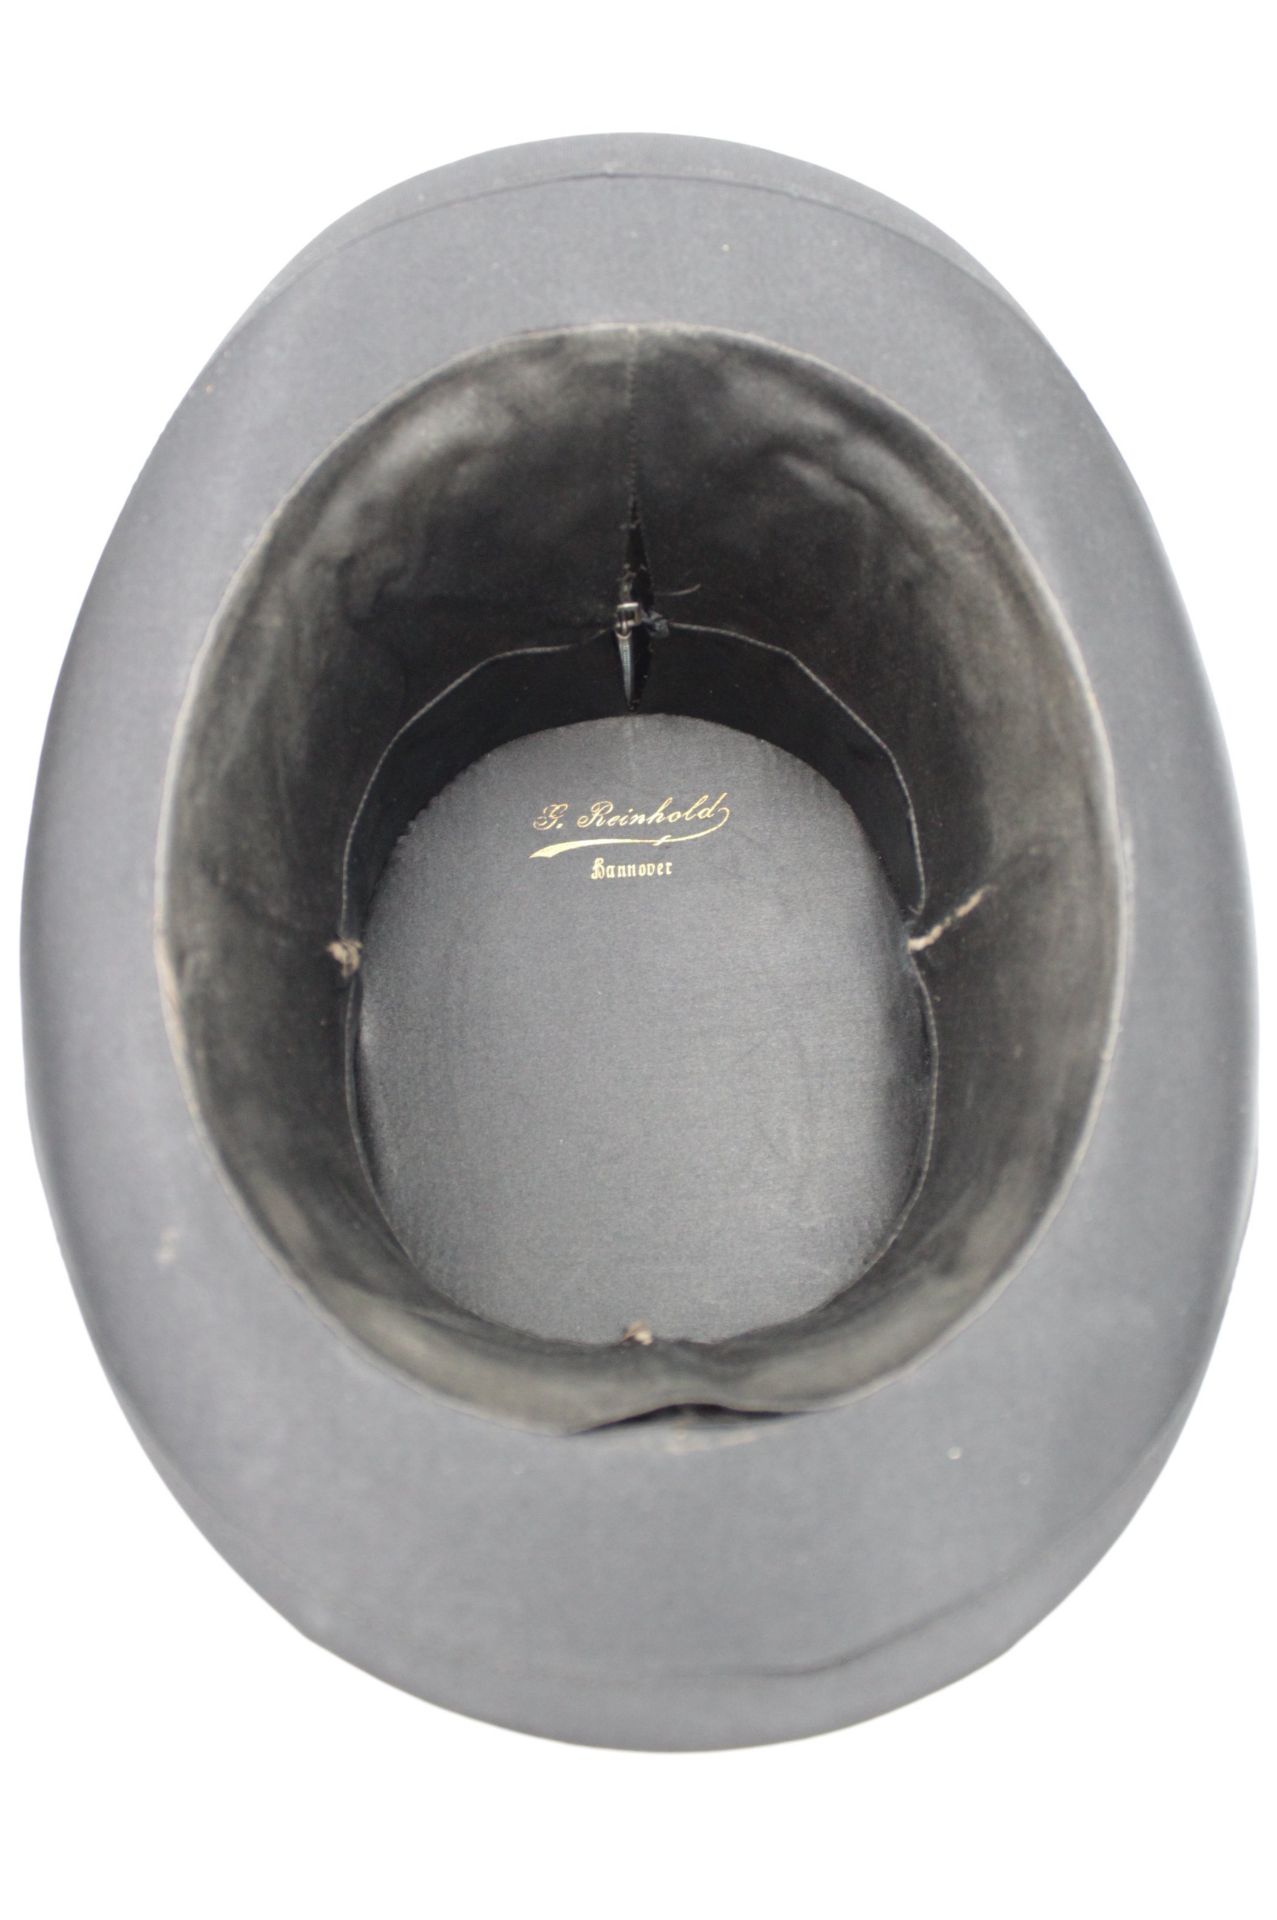 Chapeau Claque und Herren-Hut, älter, Zylinder mit Gebrauchspuren - Bild 4 aus 5